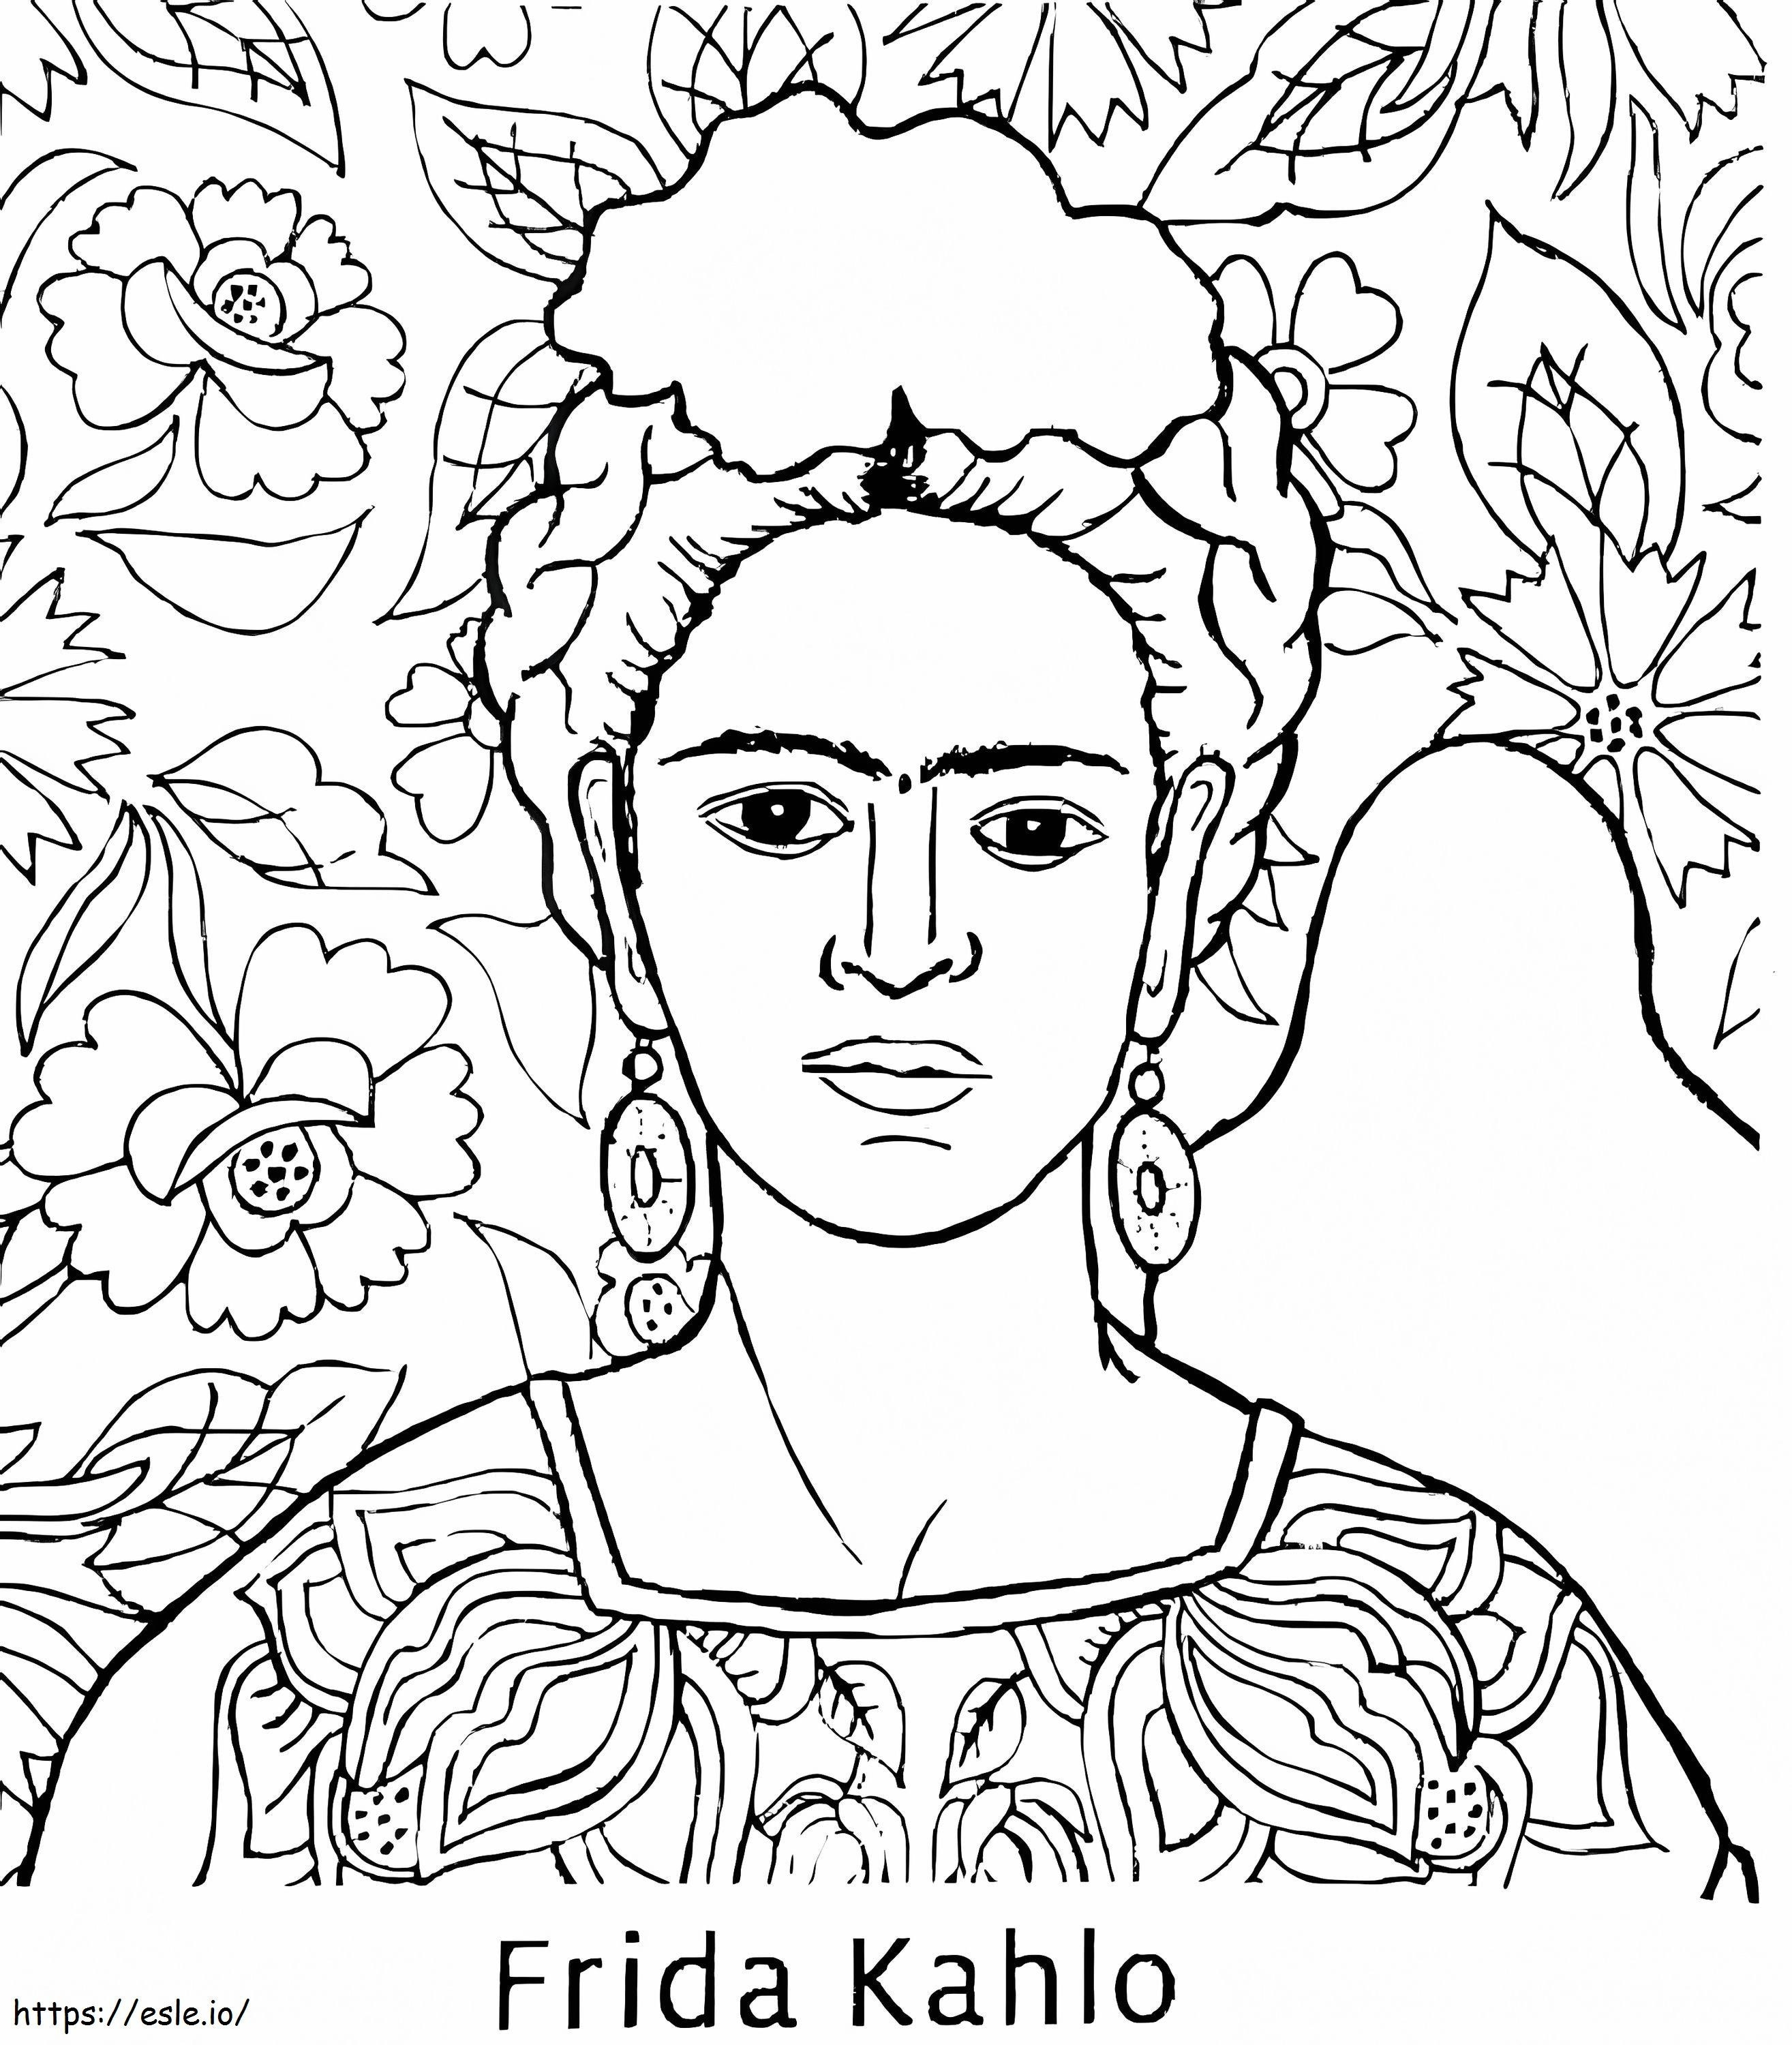 Frida Kahlo para imprimir gratis para colorear